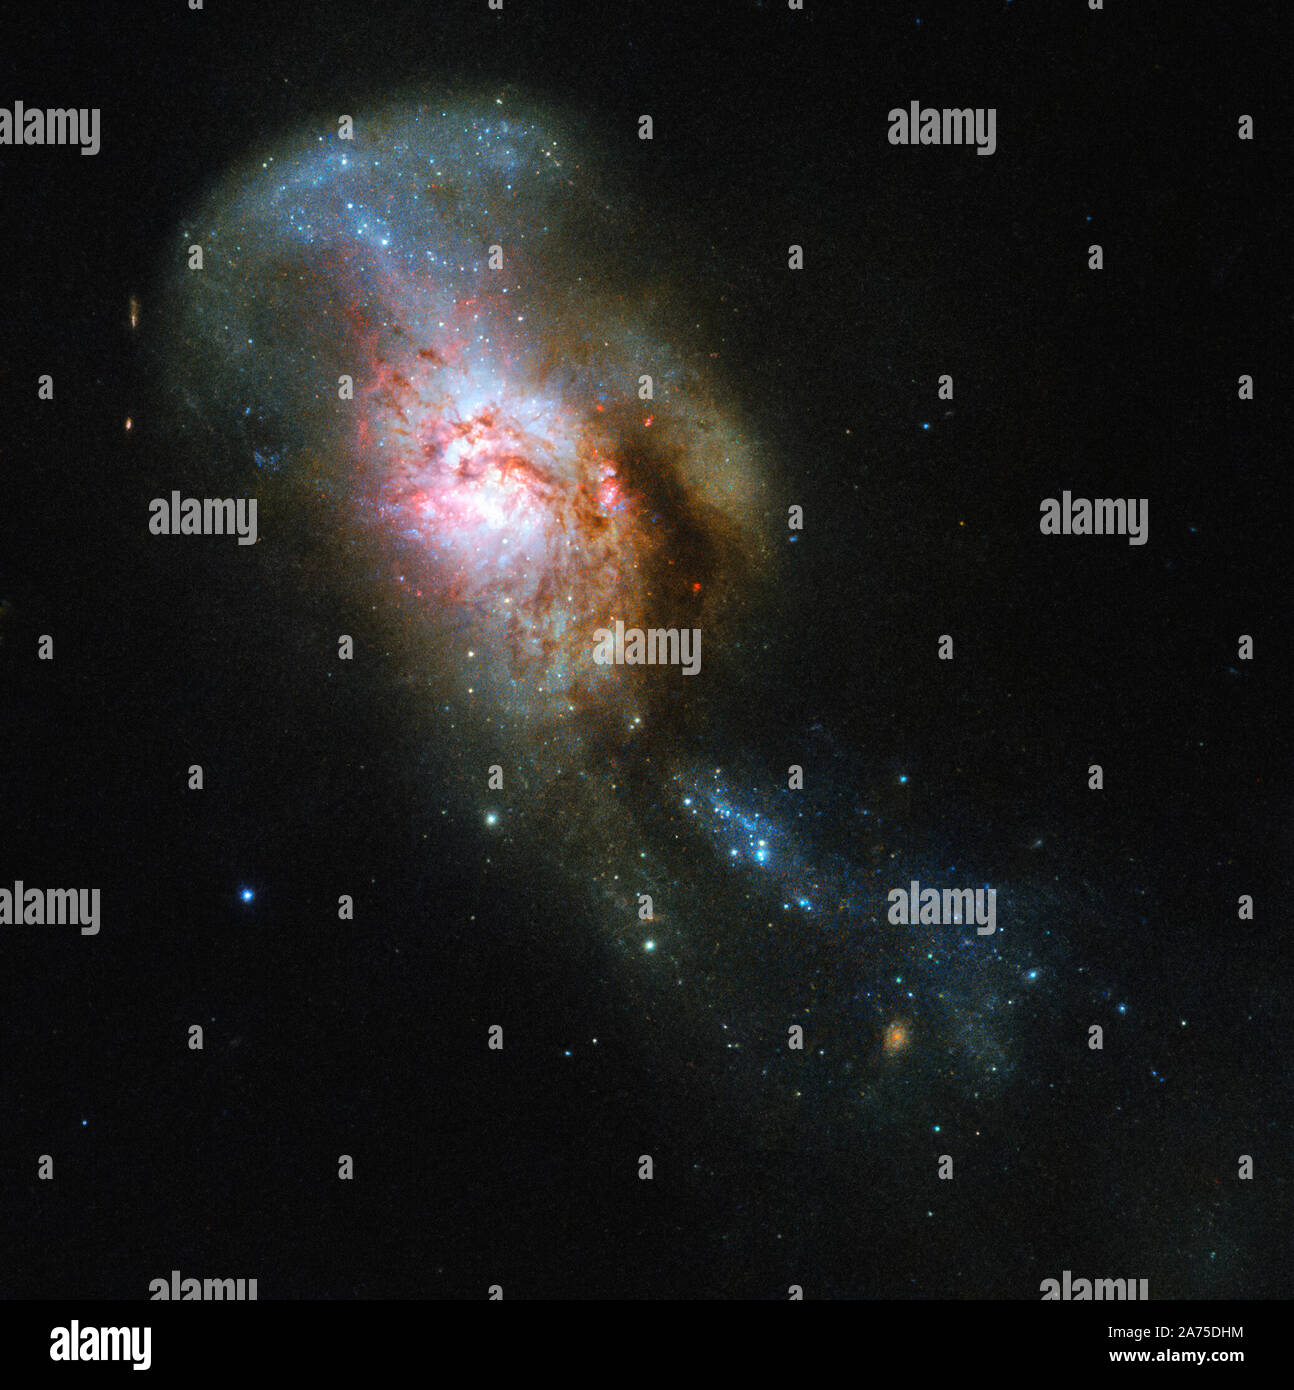 La galaxia se ilustra en esta imagen del Hubble de la semana tiene una especialmente evocador nombre: la fusión de Medusa. A menudo citada por su poco pelo nuevo Catálogo General designación de NGC 4194, esto no siempre era una entidad, sino dos. Una de las primeras galaxy consume un sistema rico de gas más pequeñas, arrojando arroyos de estrellas y polvo en el espacio. Estos arroyos, visto elevándose desde el comienzo de la fusión, se asemeja a la Galaxia agonizando serpientes que Medusa, un monstruo en la antigua mitología griega, famosa tenía en su cabeza en lugar de cabello, el objeto de préstamo a su extraño nombre. Todos los gases frescos pooling aquí Foto de stock